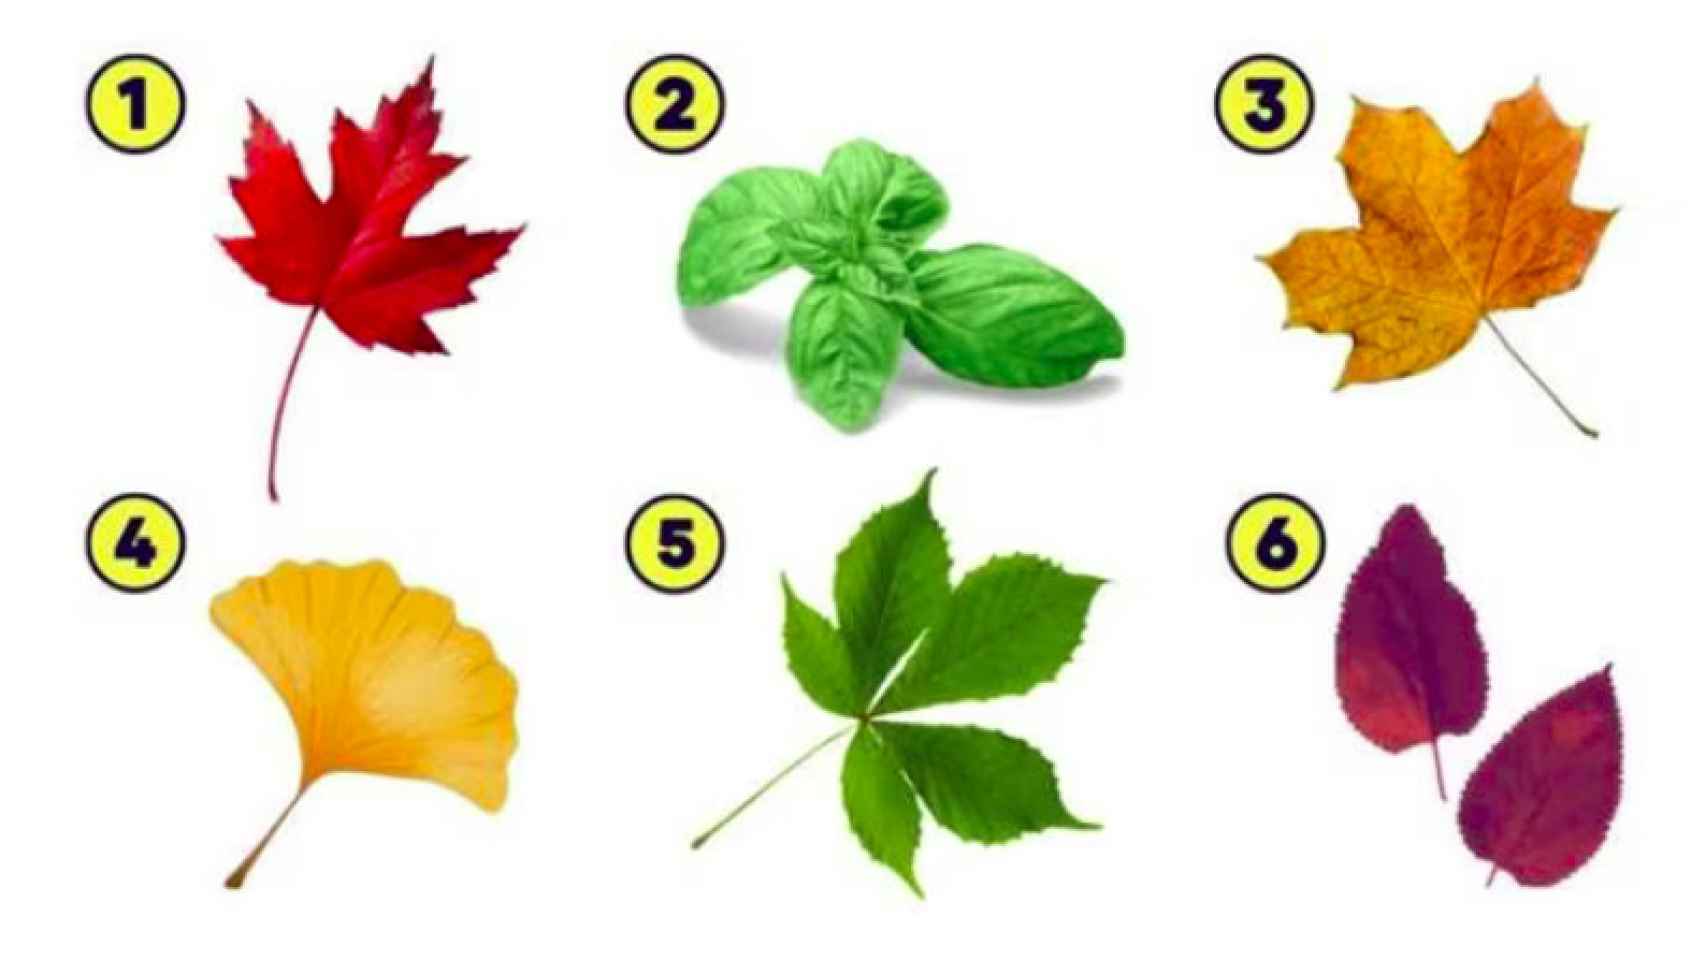 ¿Cuál de estas hojas vas a elegir?